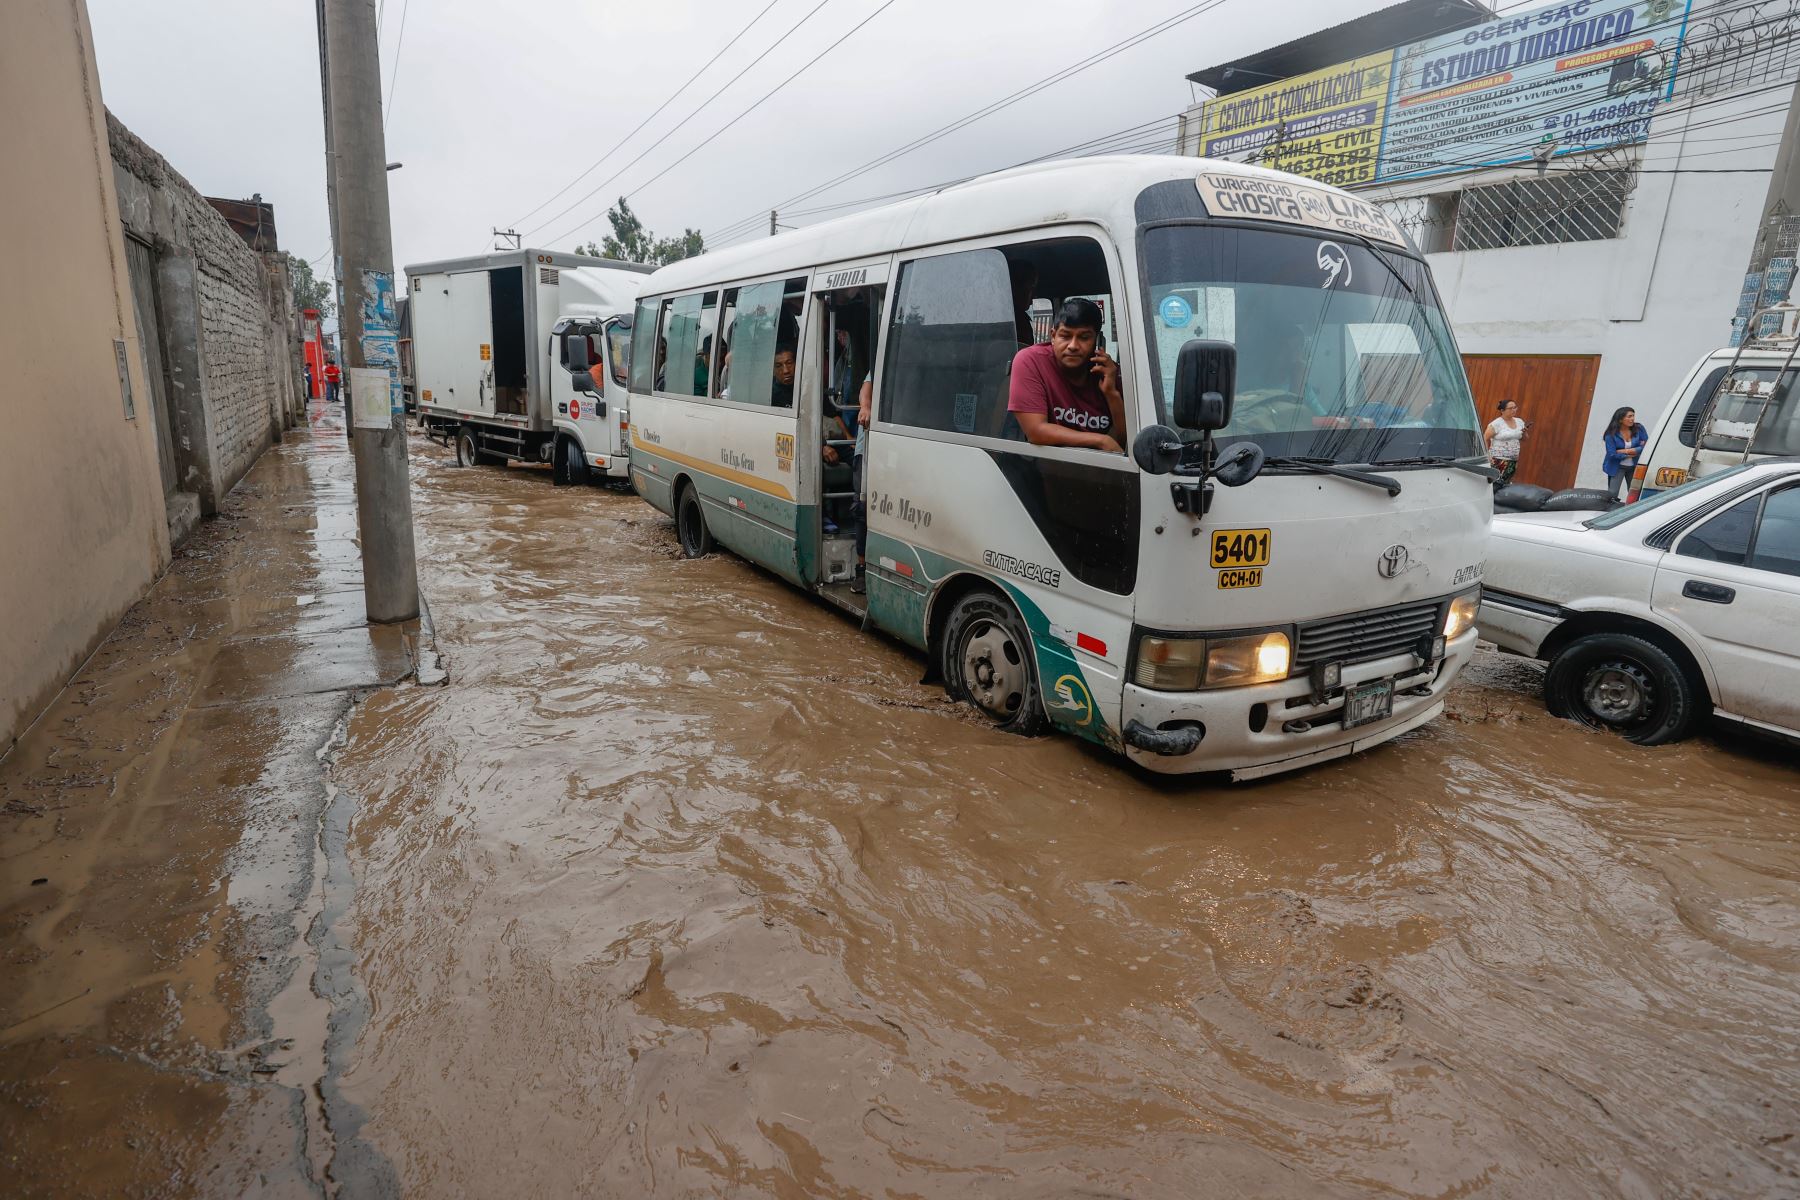 La Carretera Central luce esta tarde completamente inundada en el distrito de Chaclacayo, debido a la activación de la quebrada Los Laureles por las intensas lluvias que se registraron en las últimas horas.

Foto: ANDINA/Vidal Tarqui